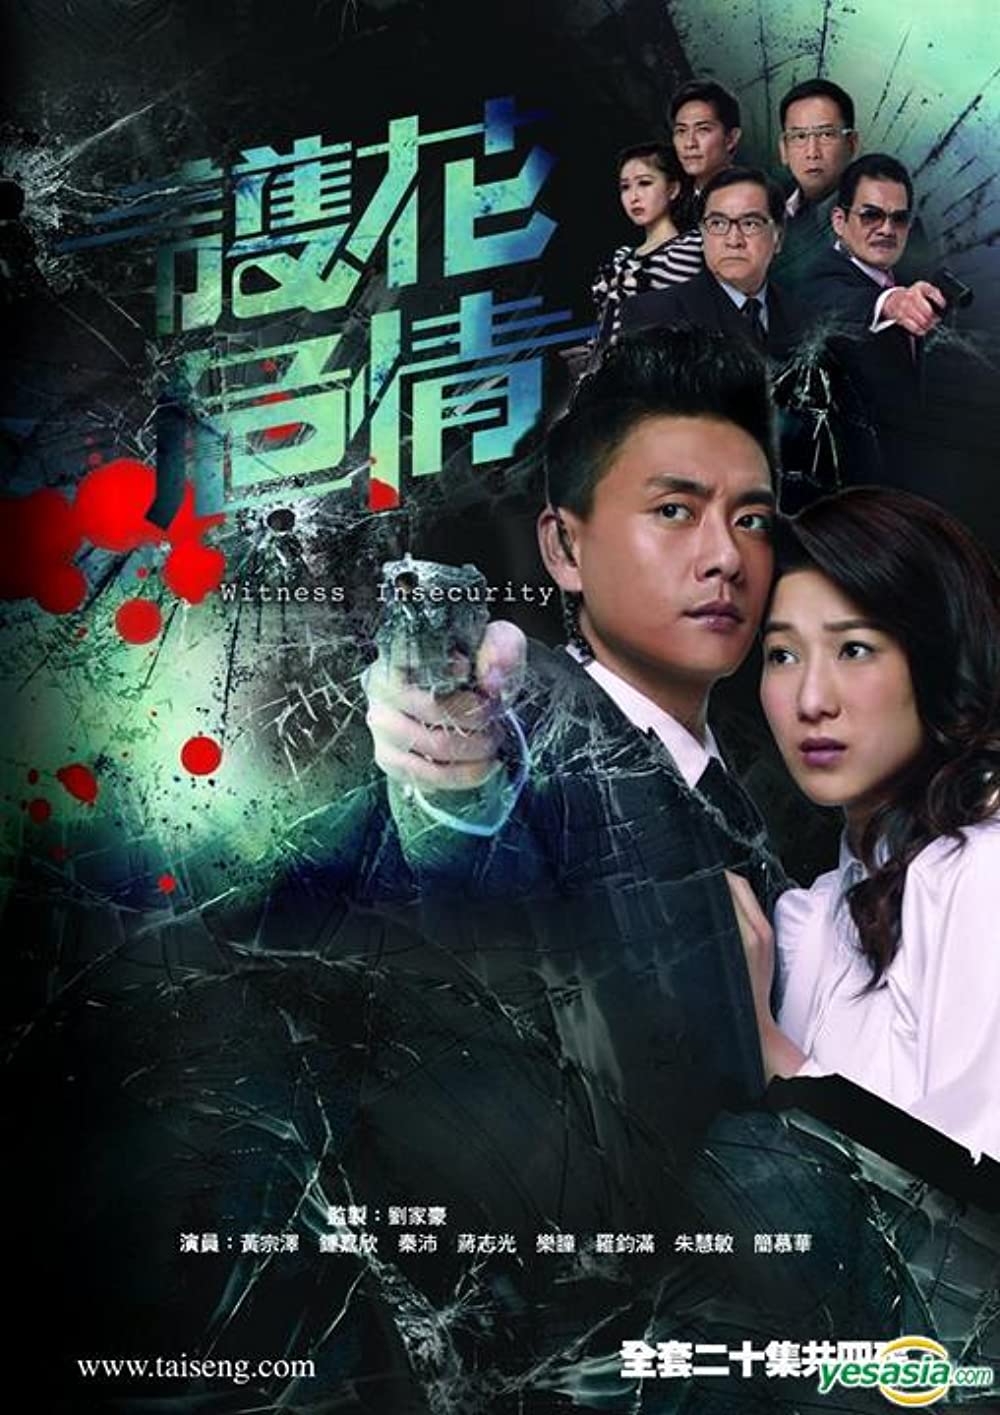 Huỳnh Tông Trạch phim: Bảo vệ nhân chứng - Witness Insecurity (2012)